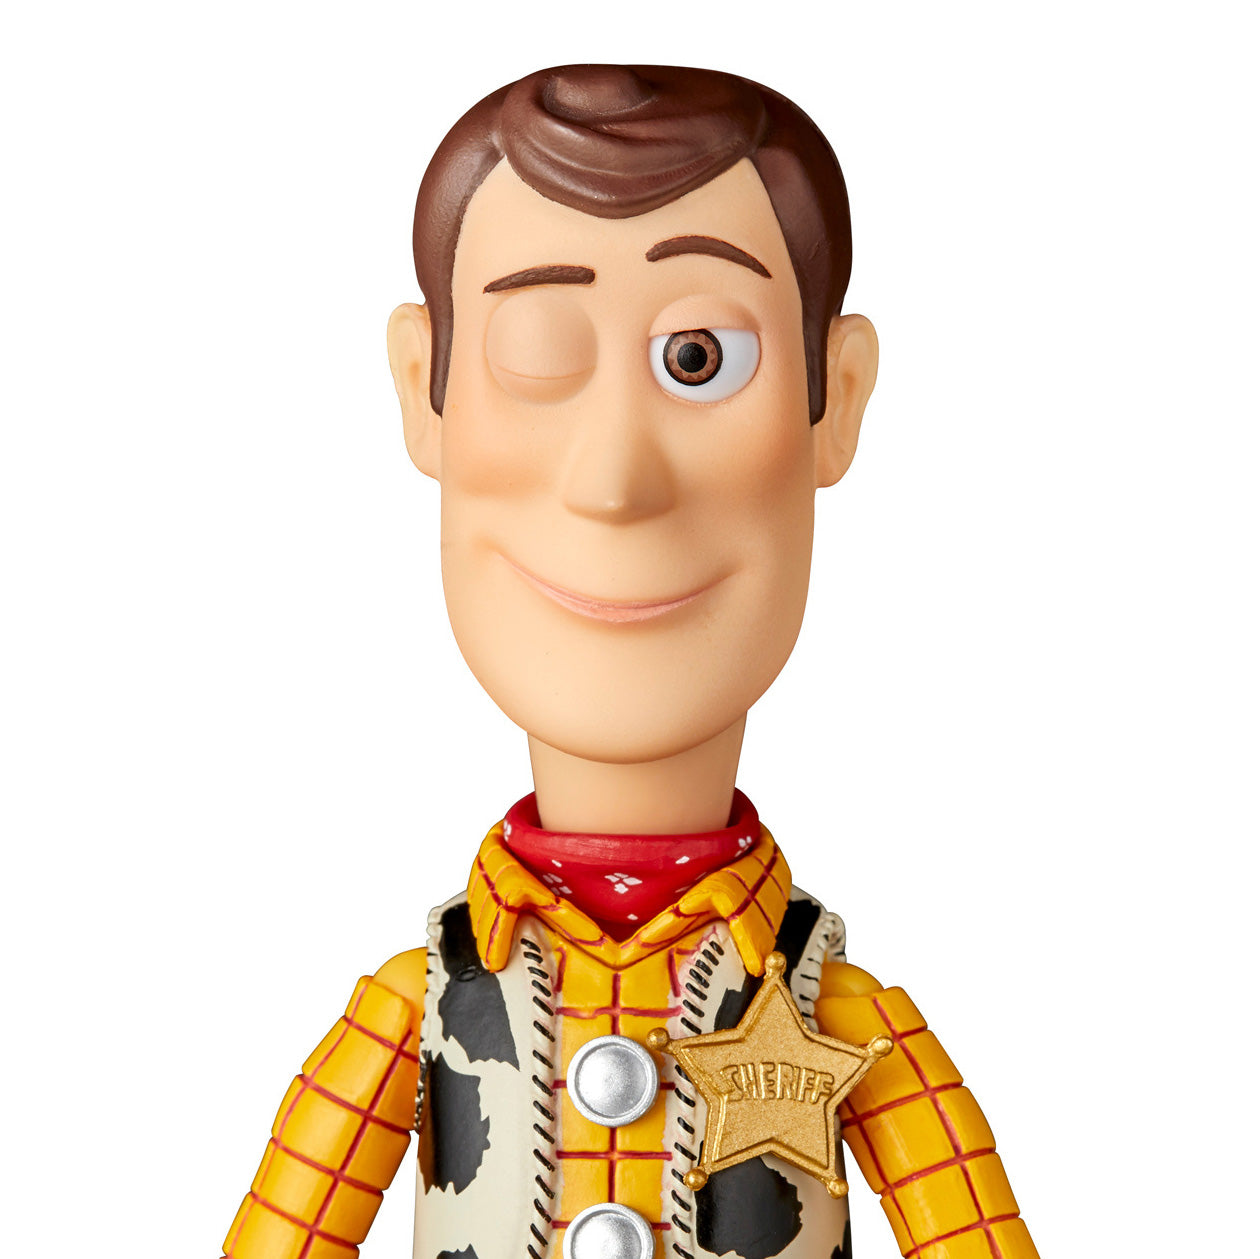 Kaiyodo - Revoltech - NR044 - Disney&#39;s Toy Story - Woody 2.0 - Marvelous Toys